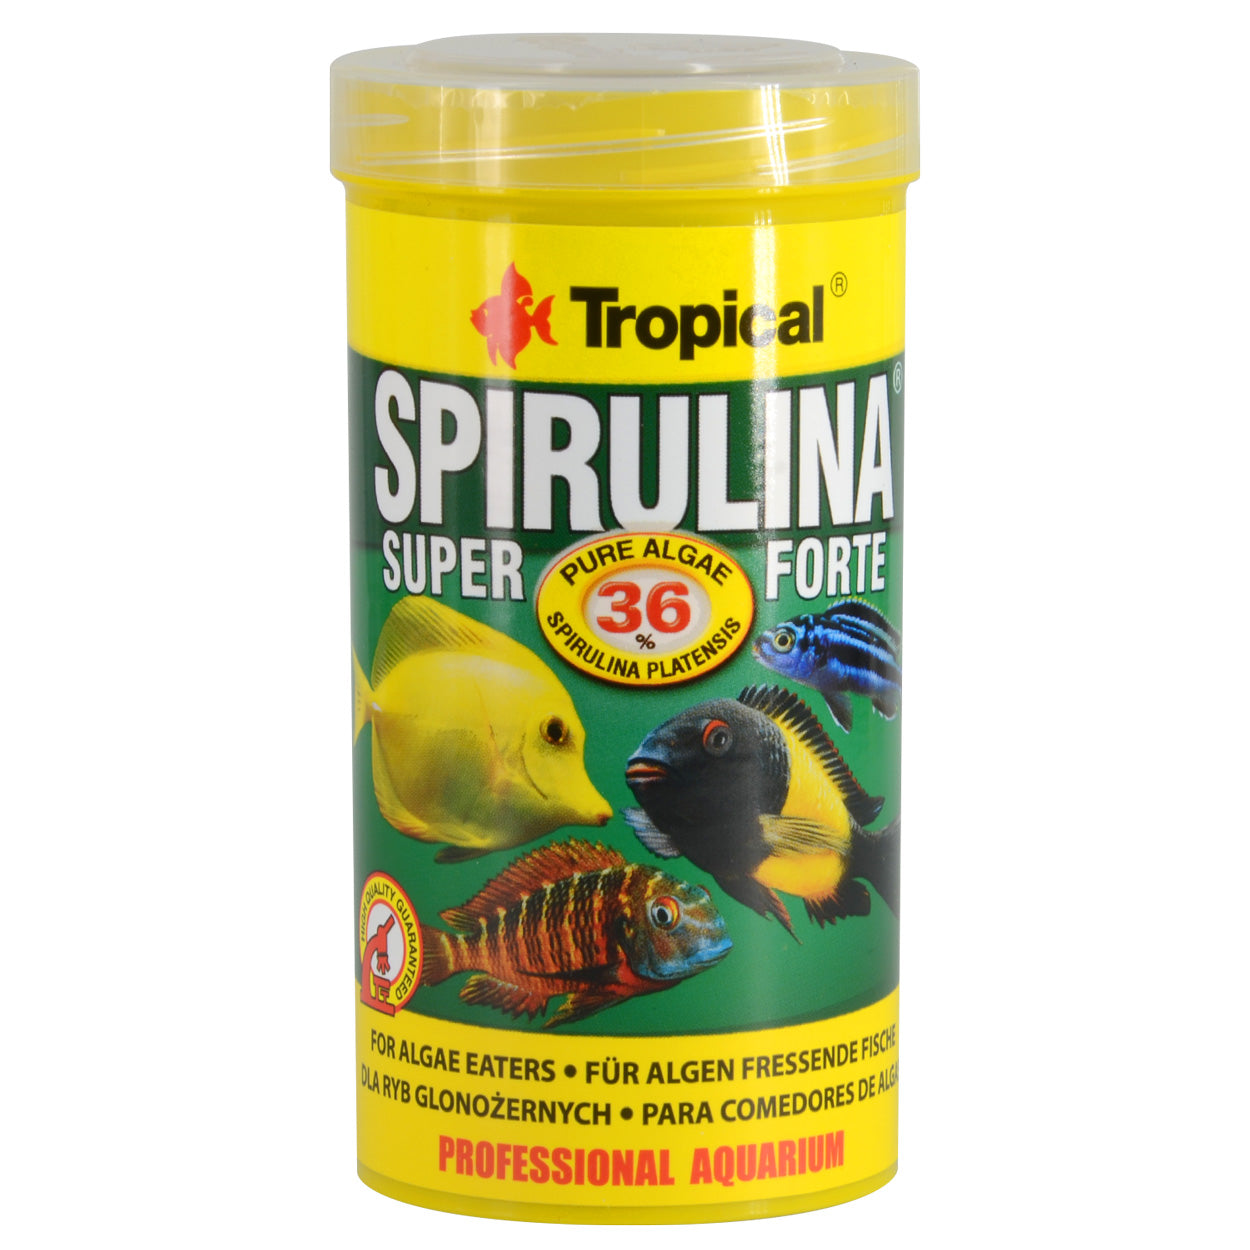 Super Spirulina Forte Vegetable Flakes